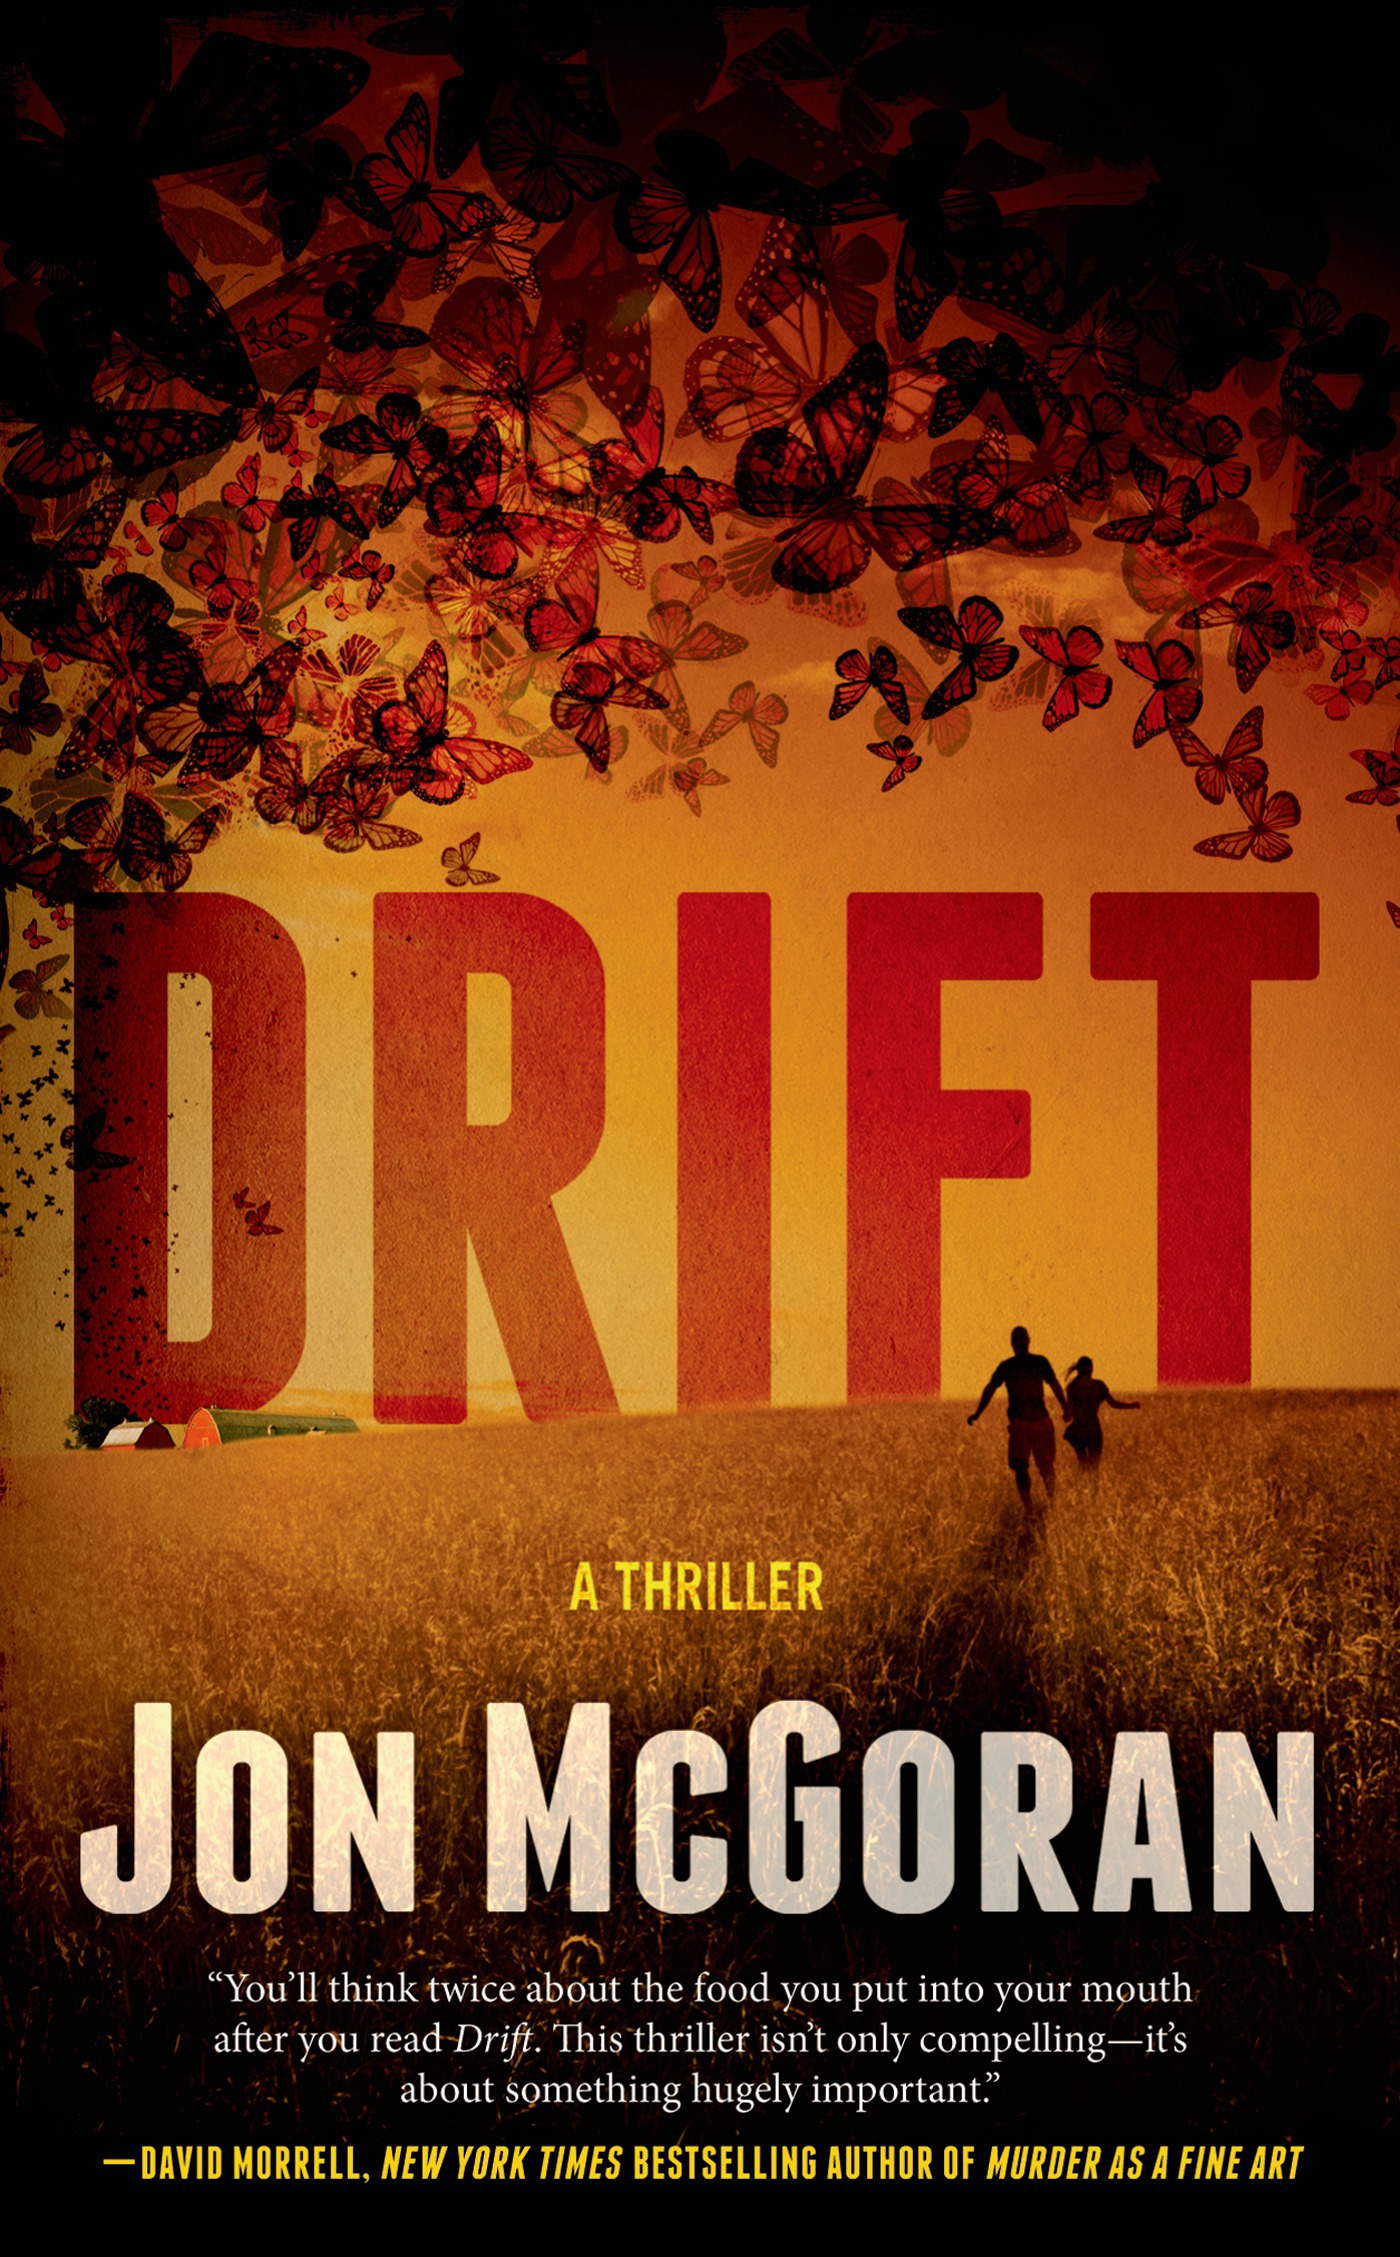 Drift : A Thriller by Jon McGoran